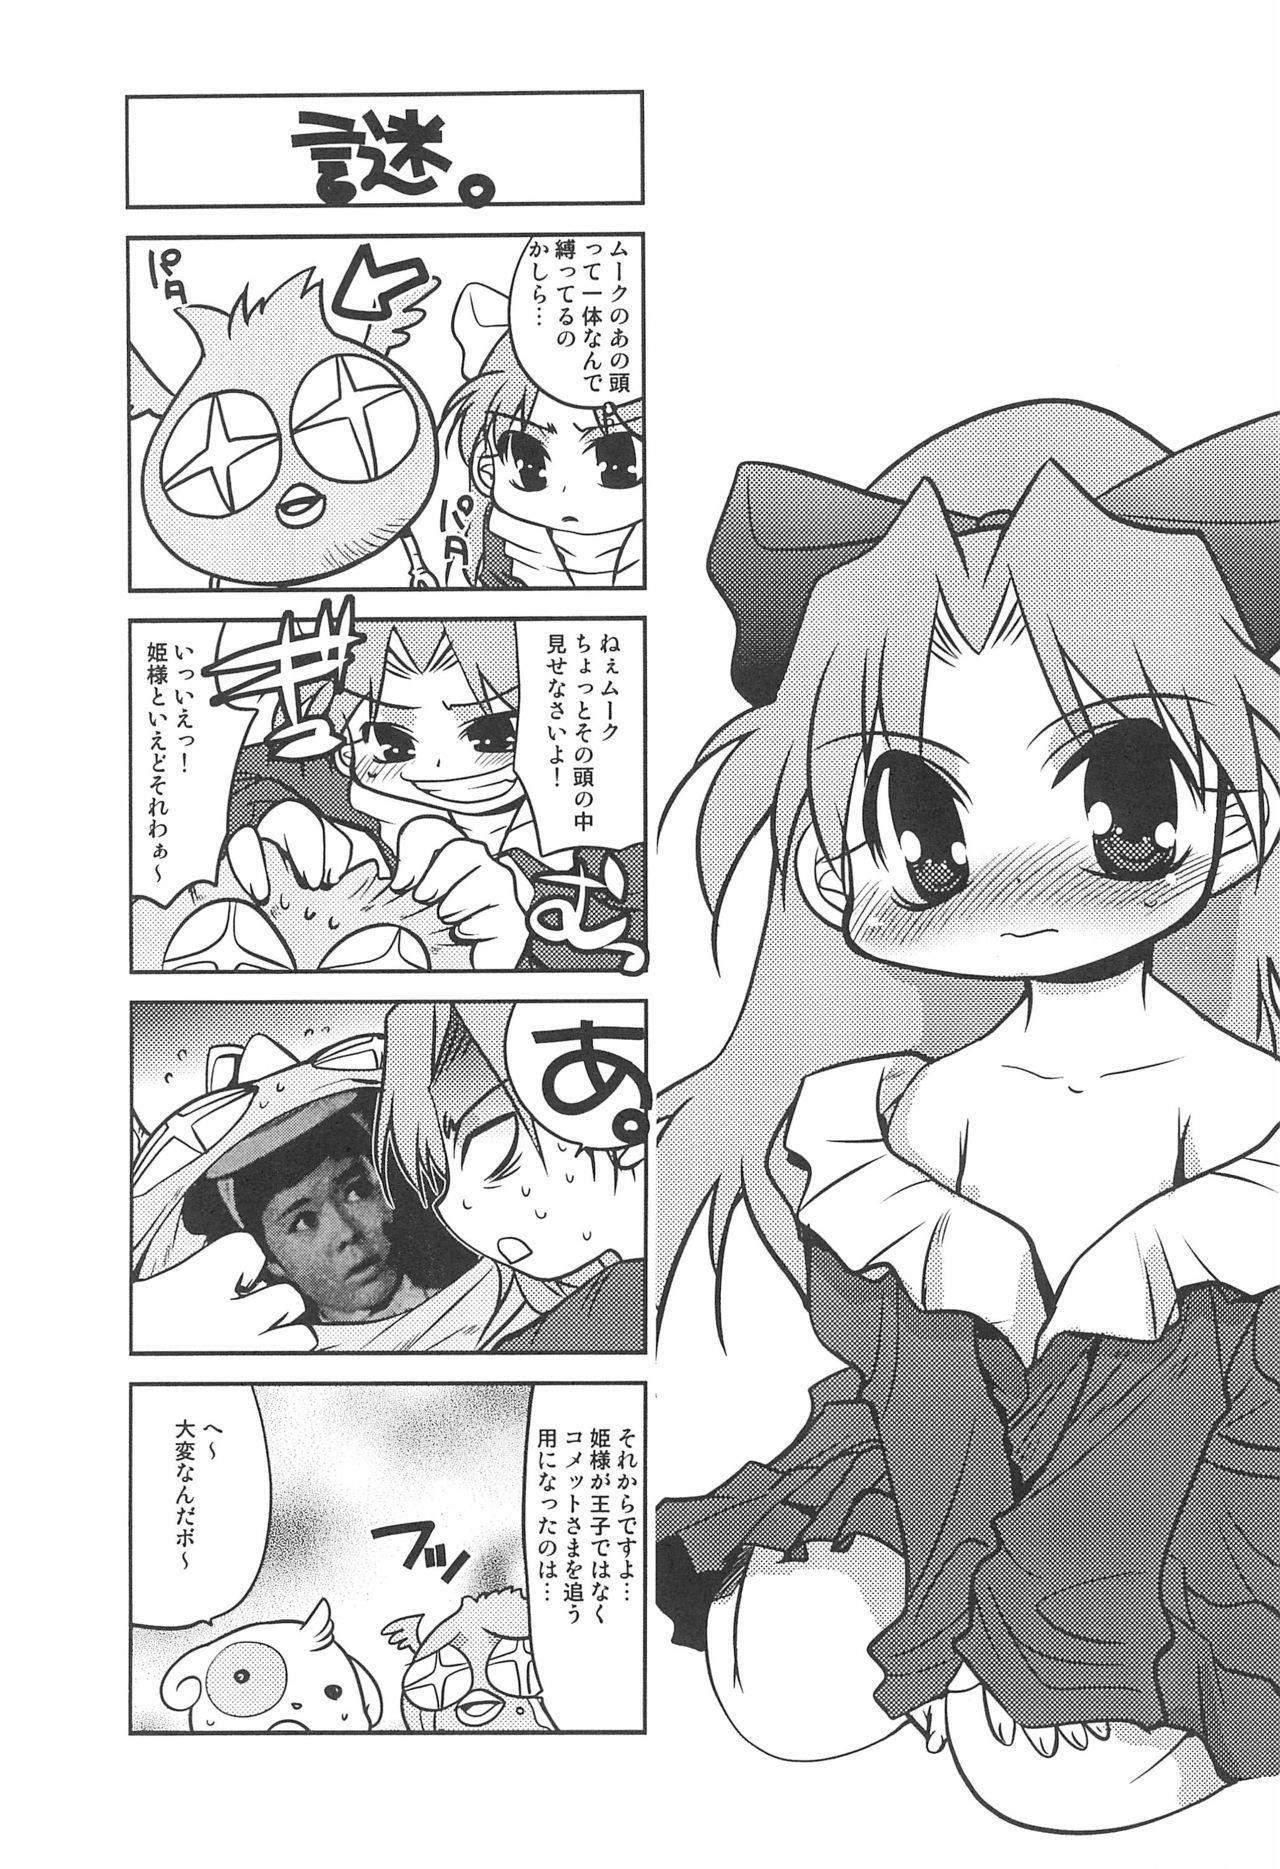 Comet-san Comical Comics 28